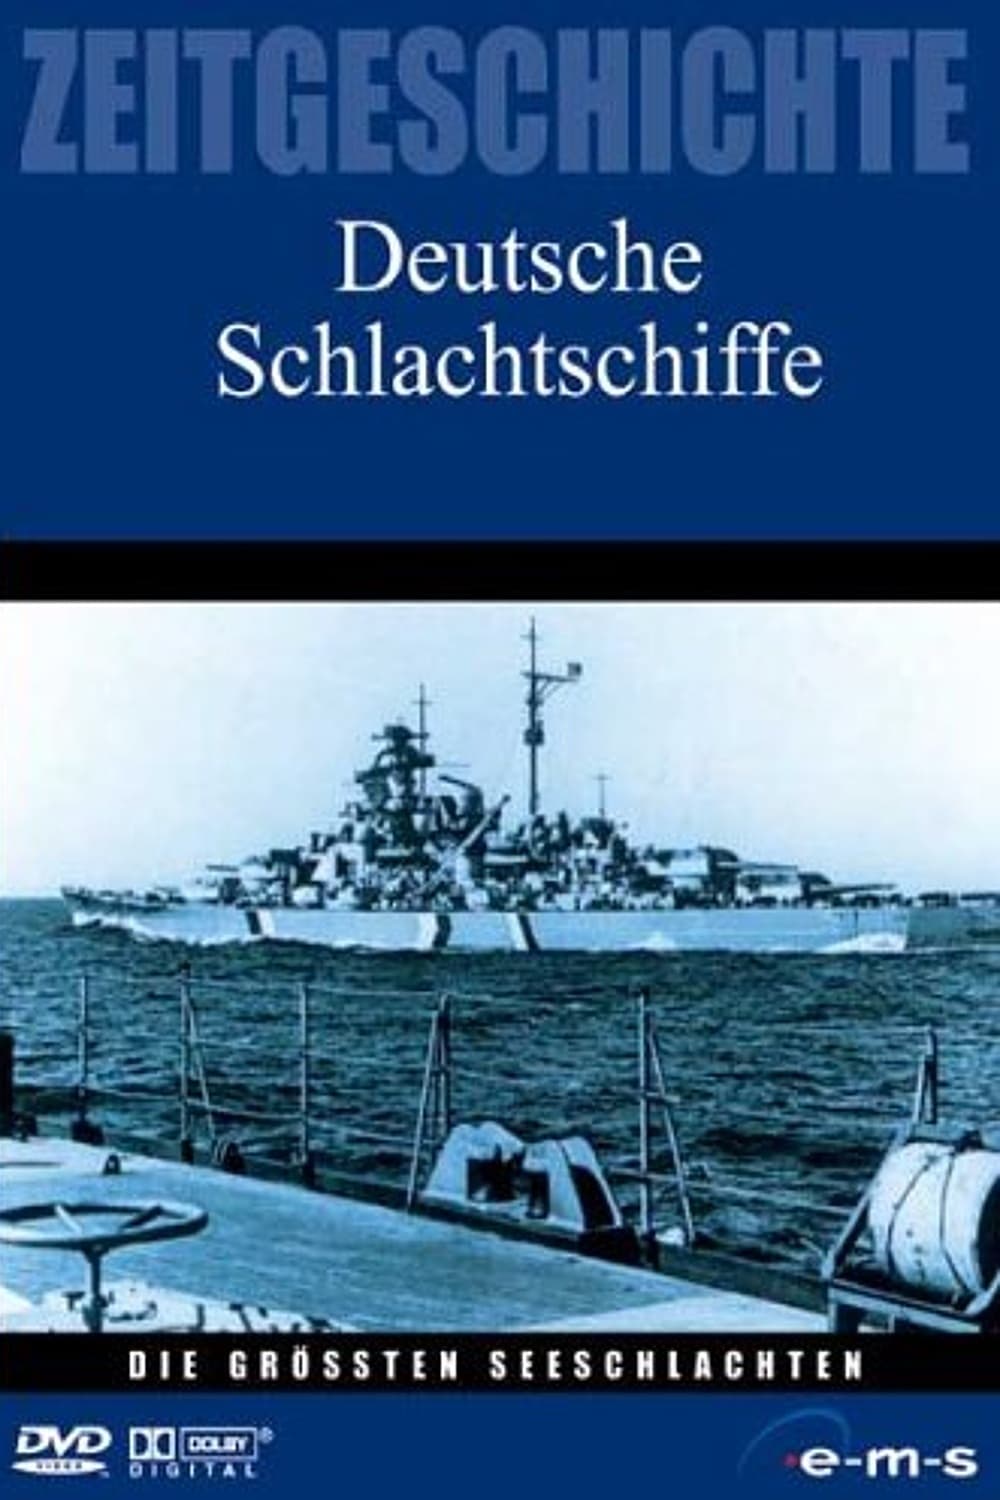 Die größten Seeschlachten - Deutsche Schlachtschiffe